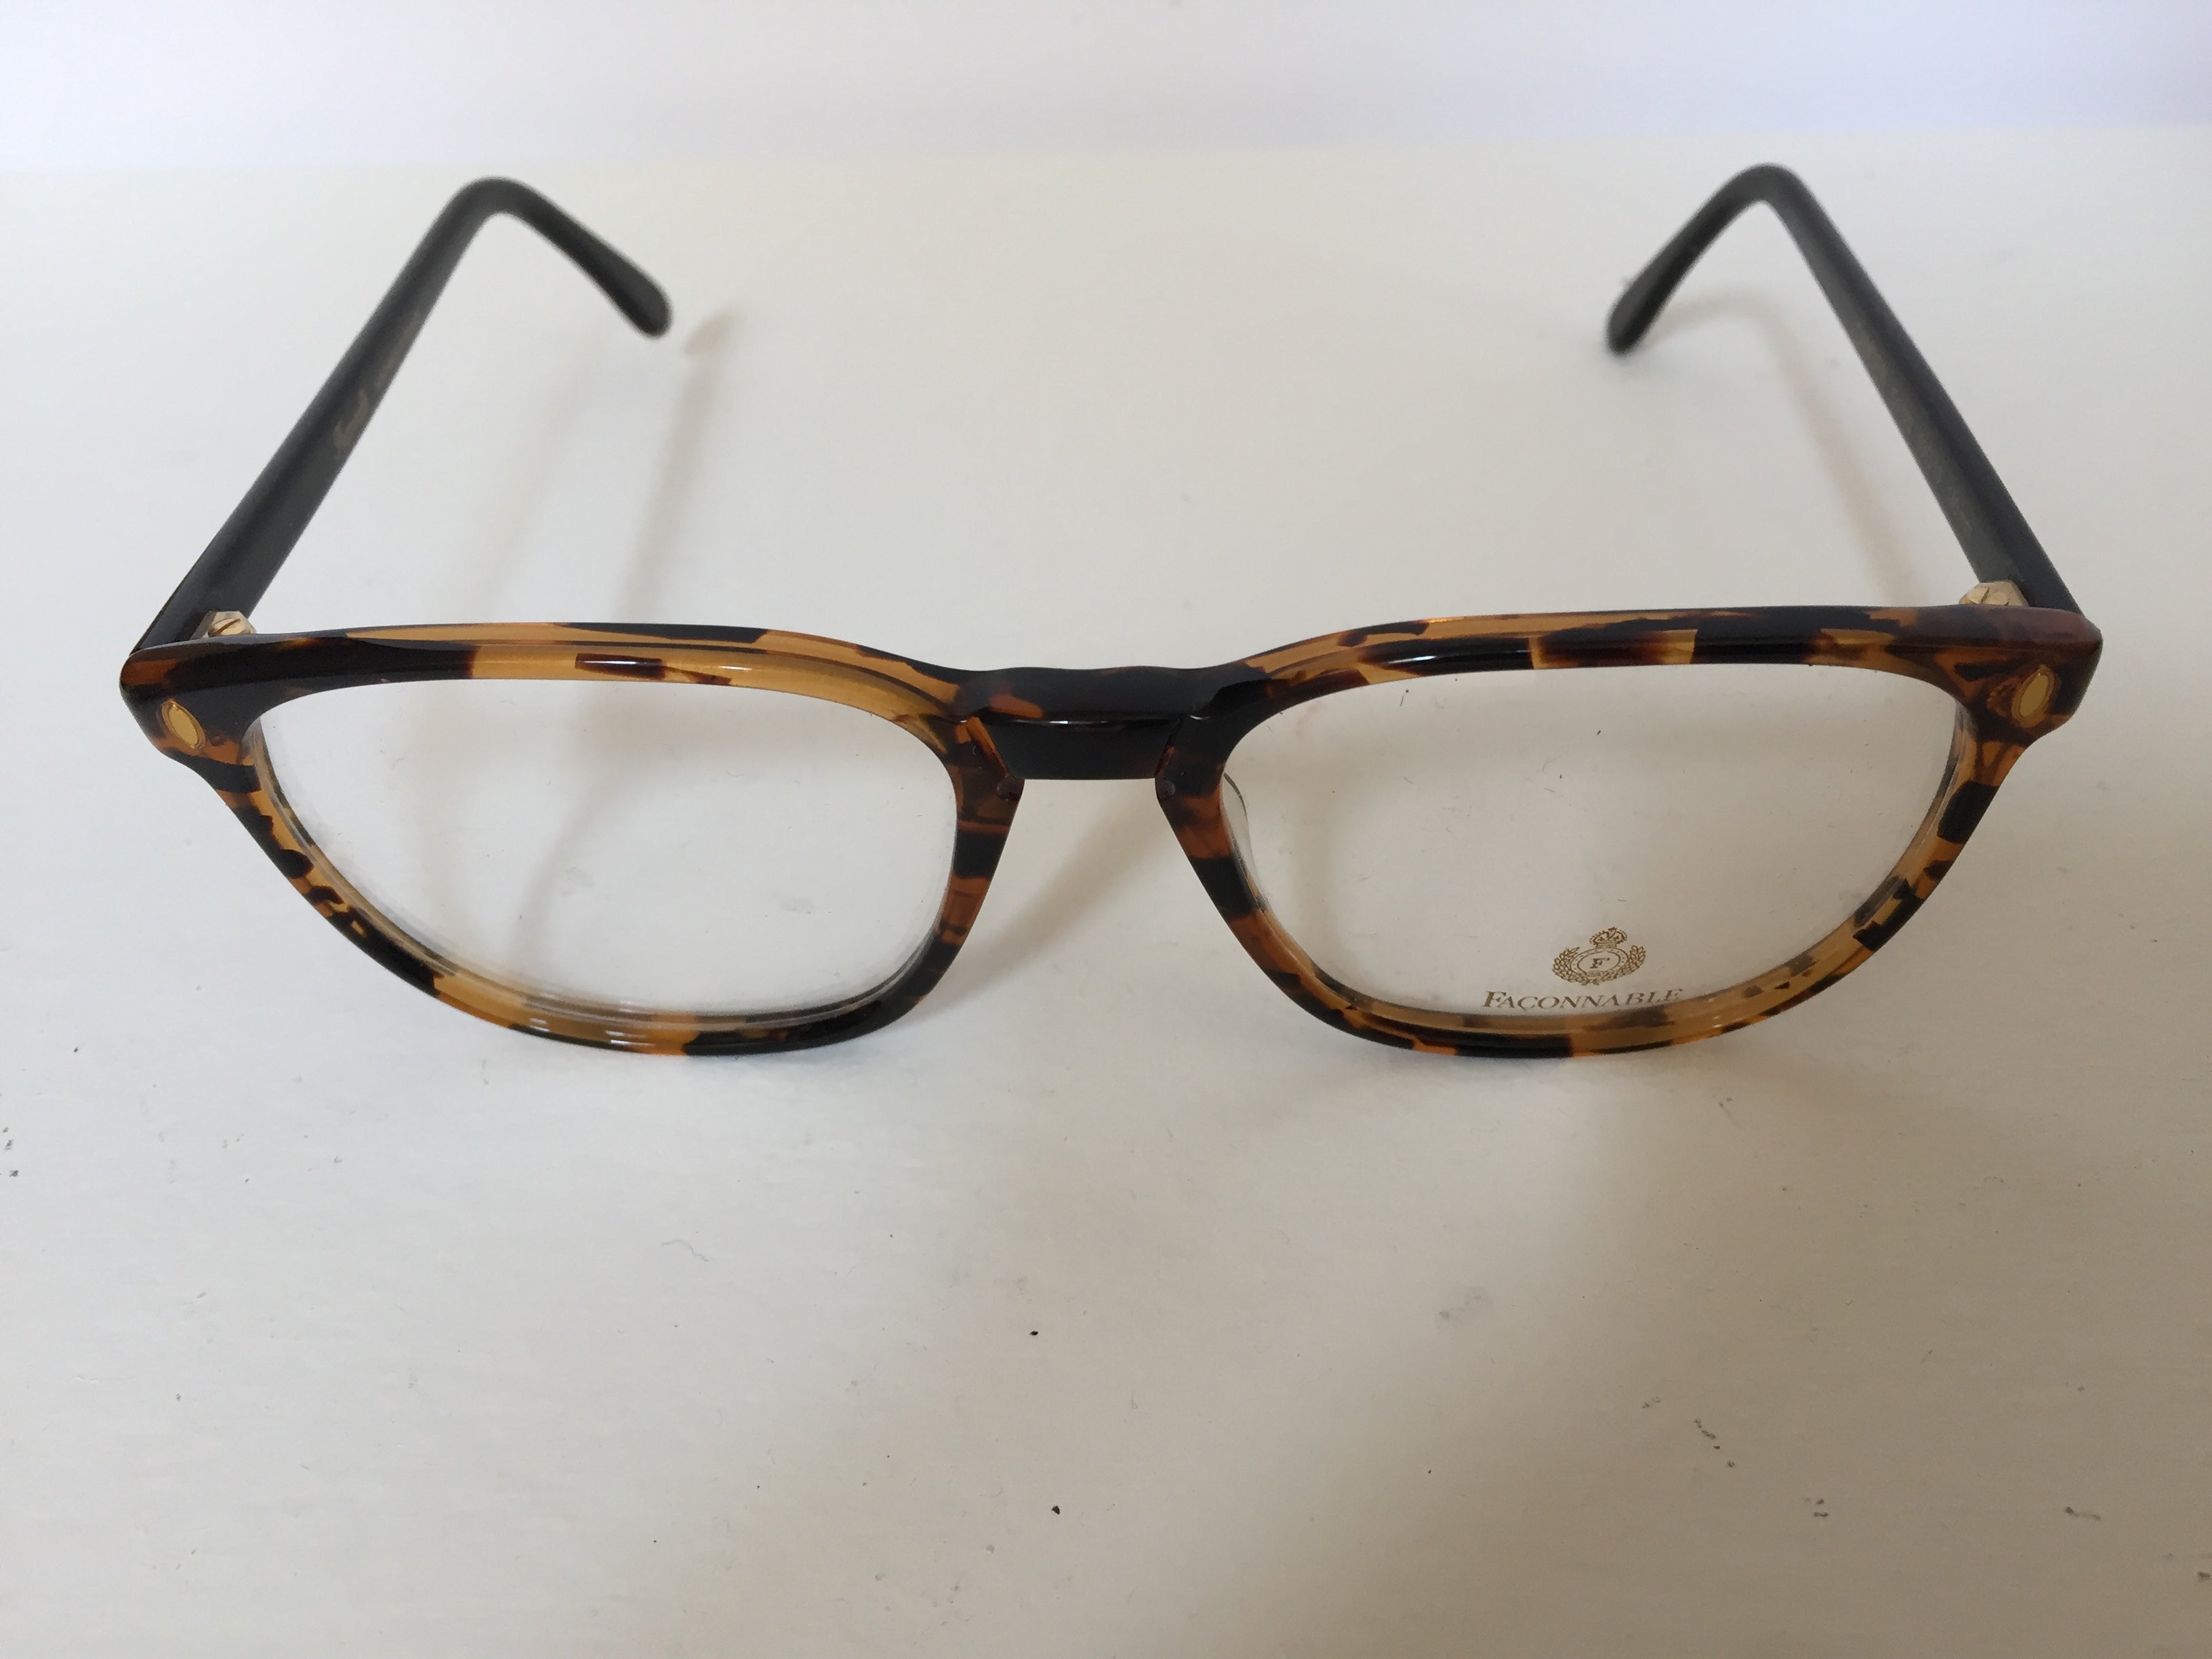 Vintage Faconnable Brillen.
Vintage-Brille Faconnable circa 1980er Jahre
Die Brillen werden ohne Etui geliefert.
Lassen Sie Ihre Brille von einem Optiker richtig einstellen, damit sie gut sitzt.
New old stock eyeglasses, man, Faconnable eyewear,